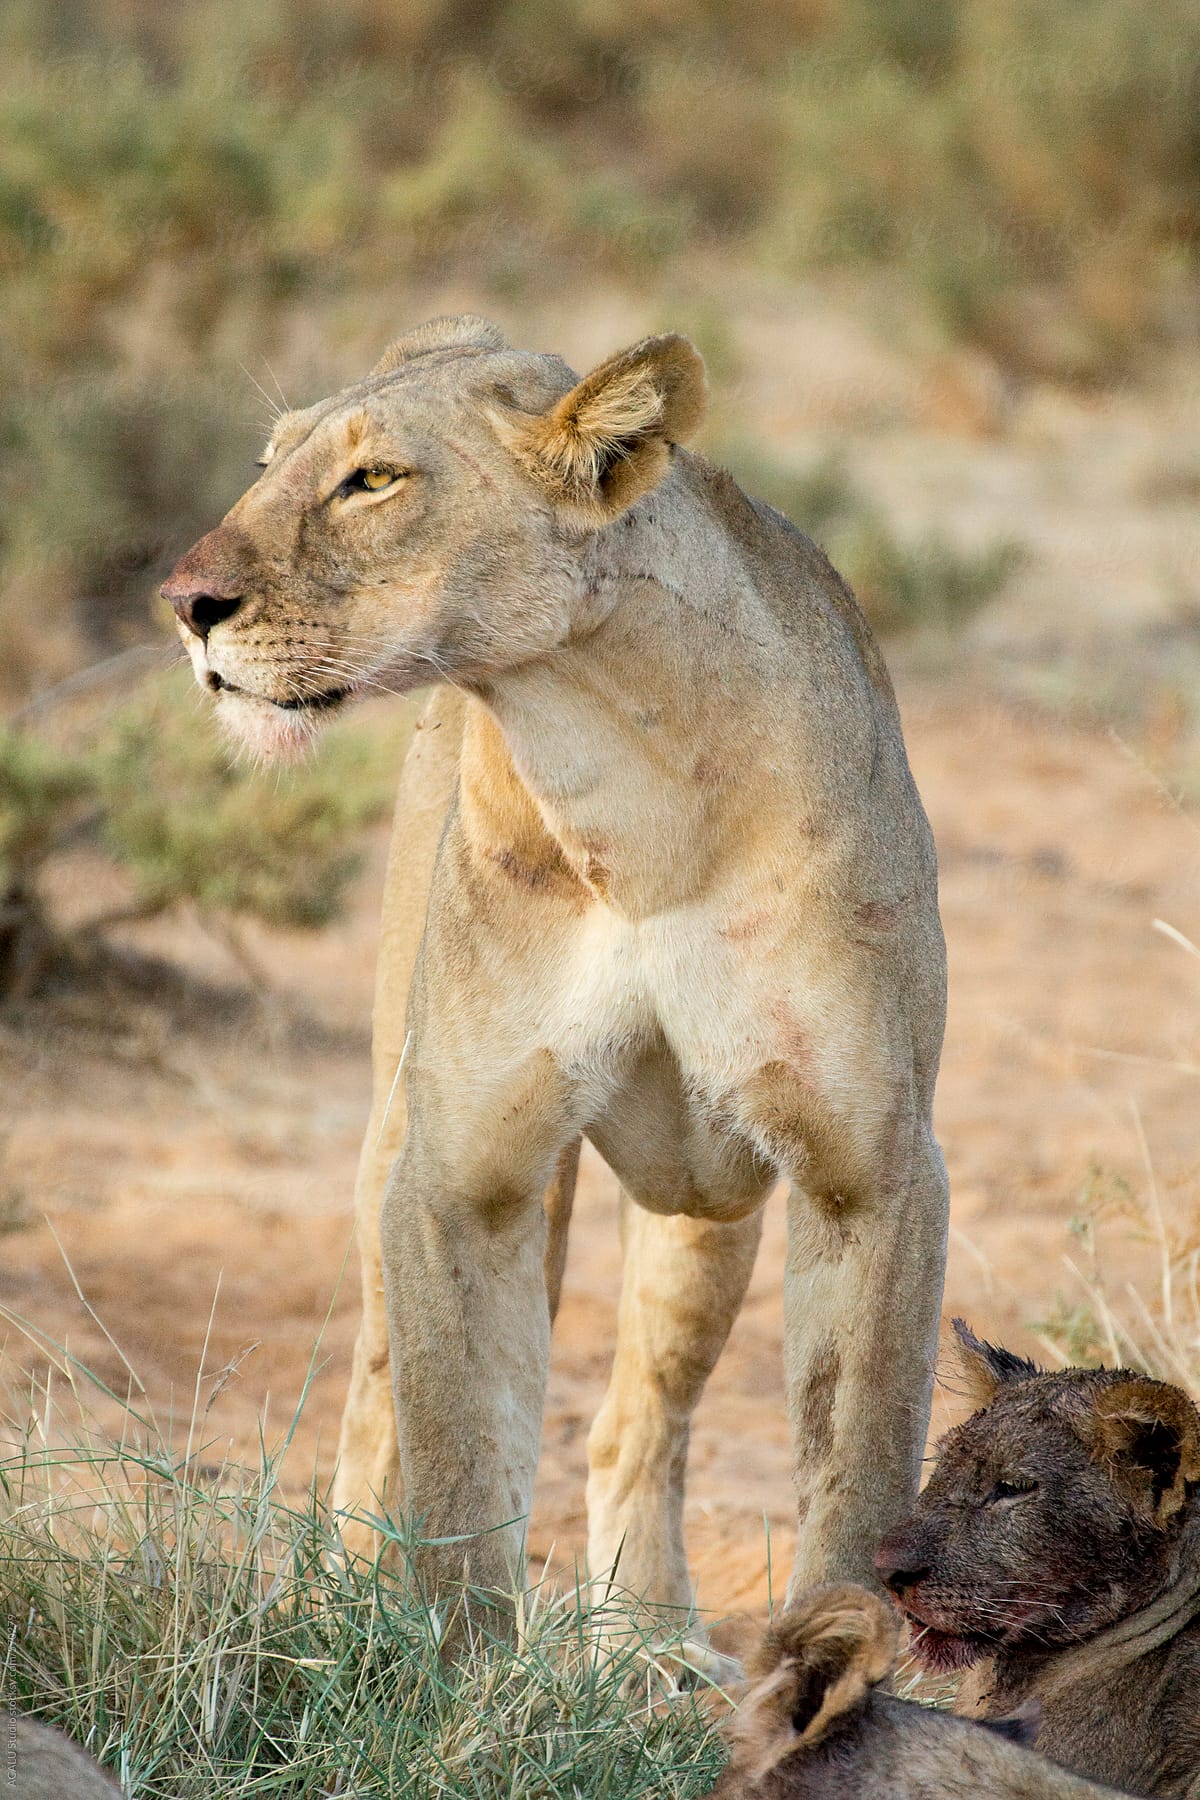 Pride of lionesses